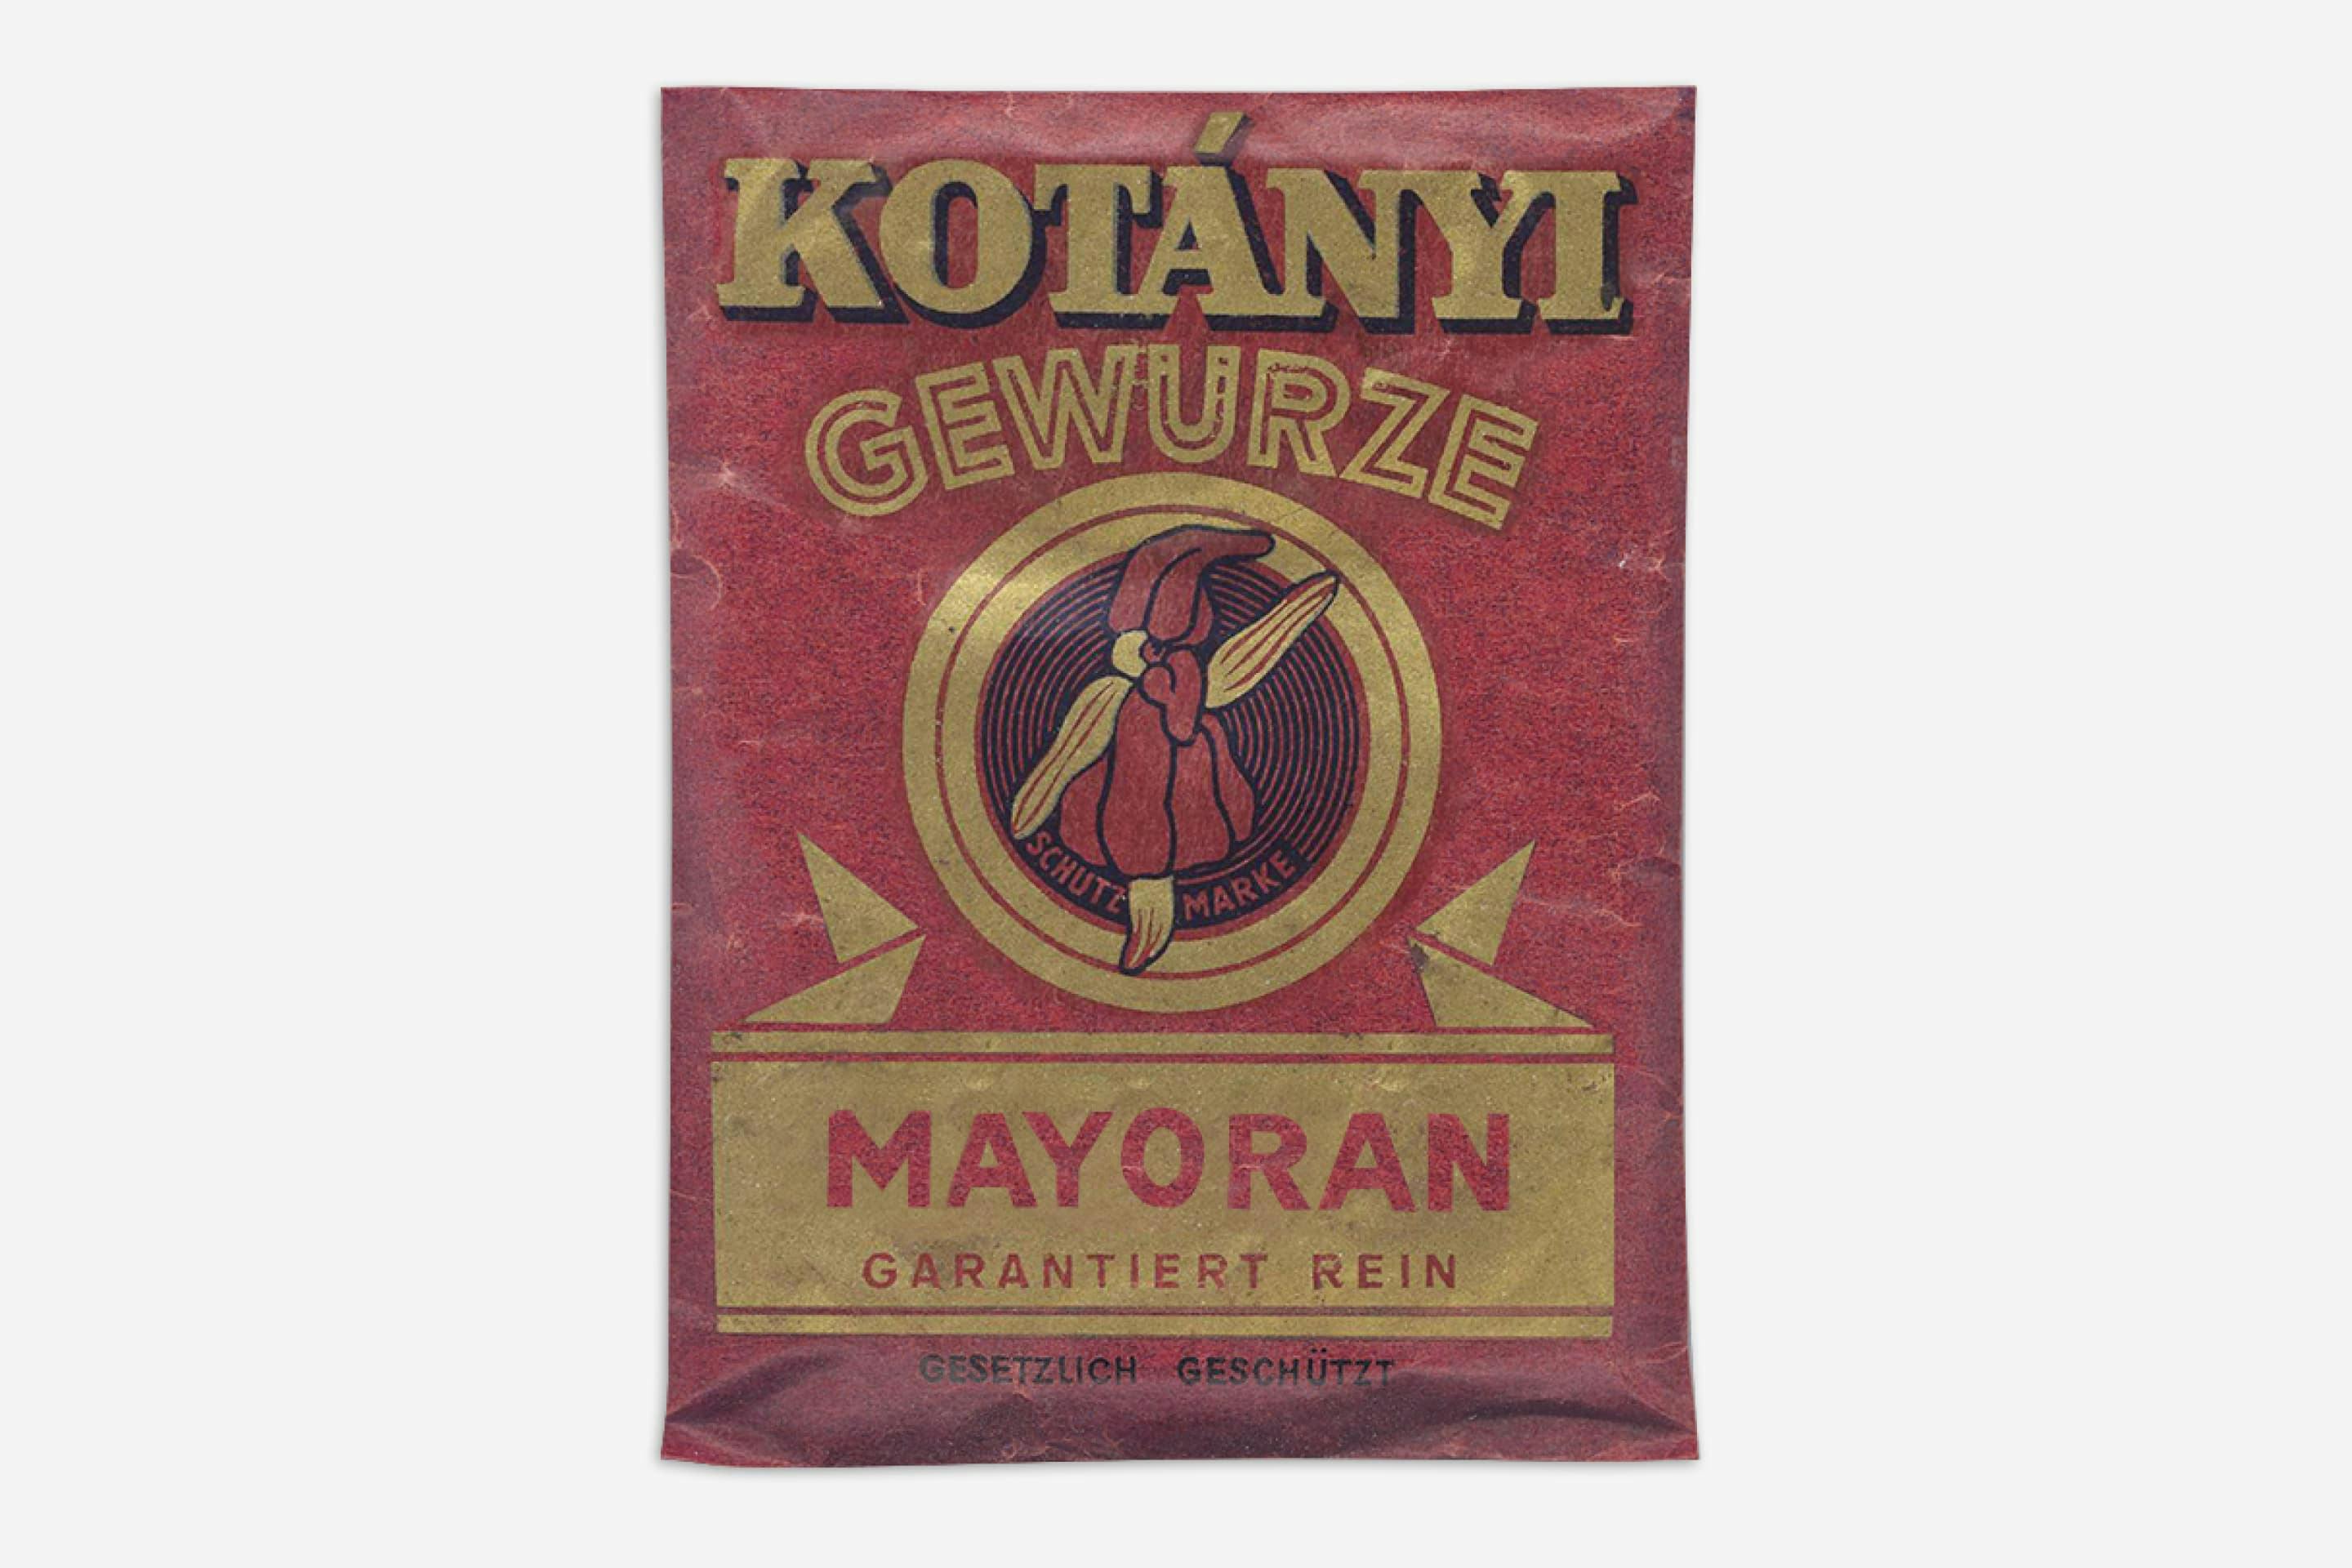 A Kotányi marjoram sachet from 1900.